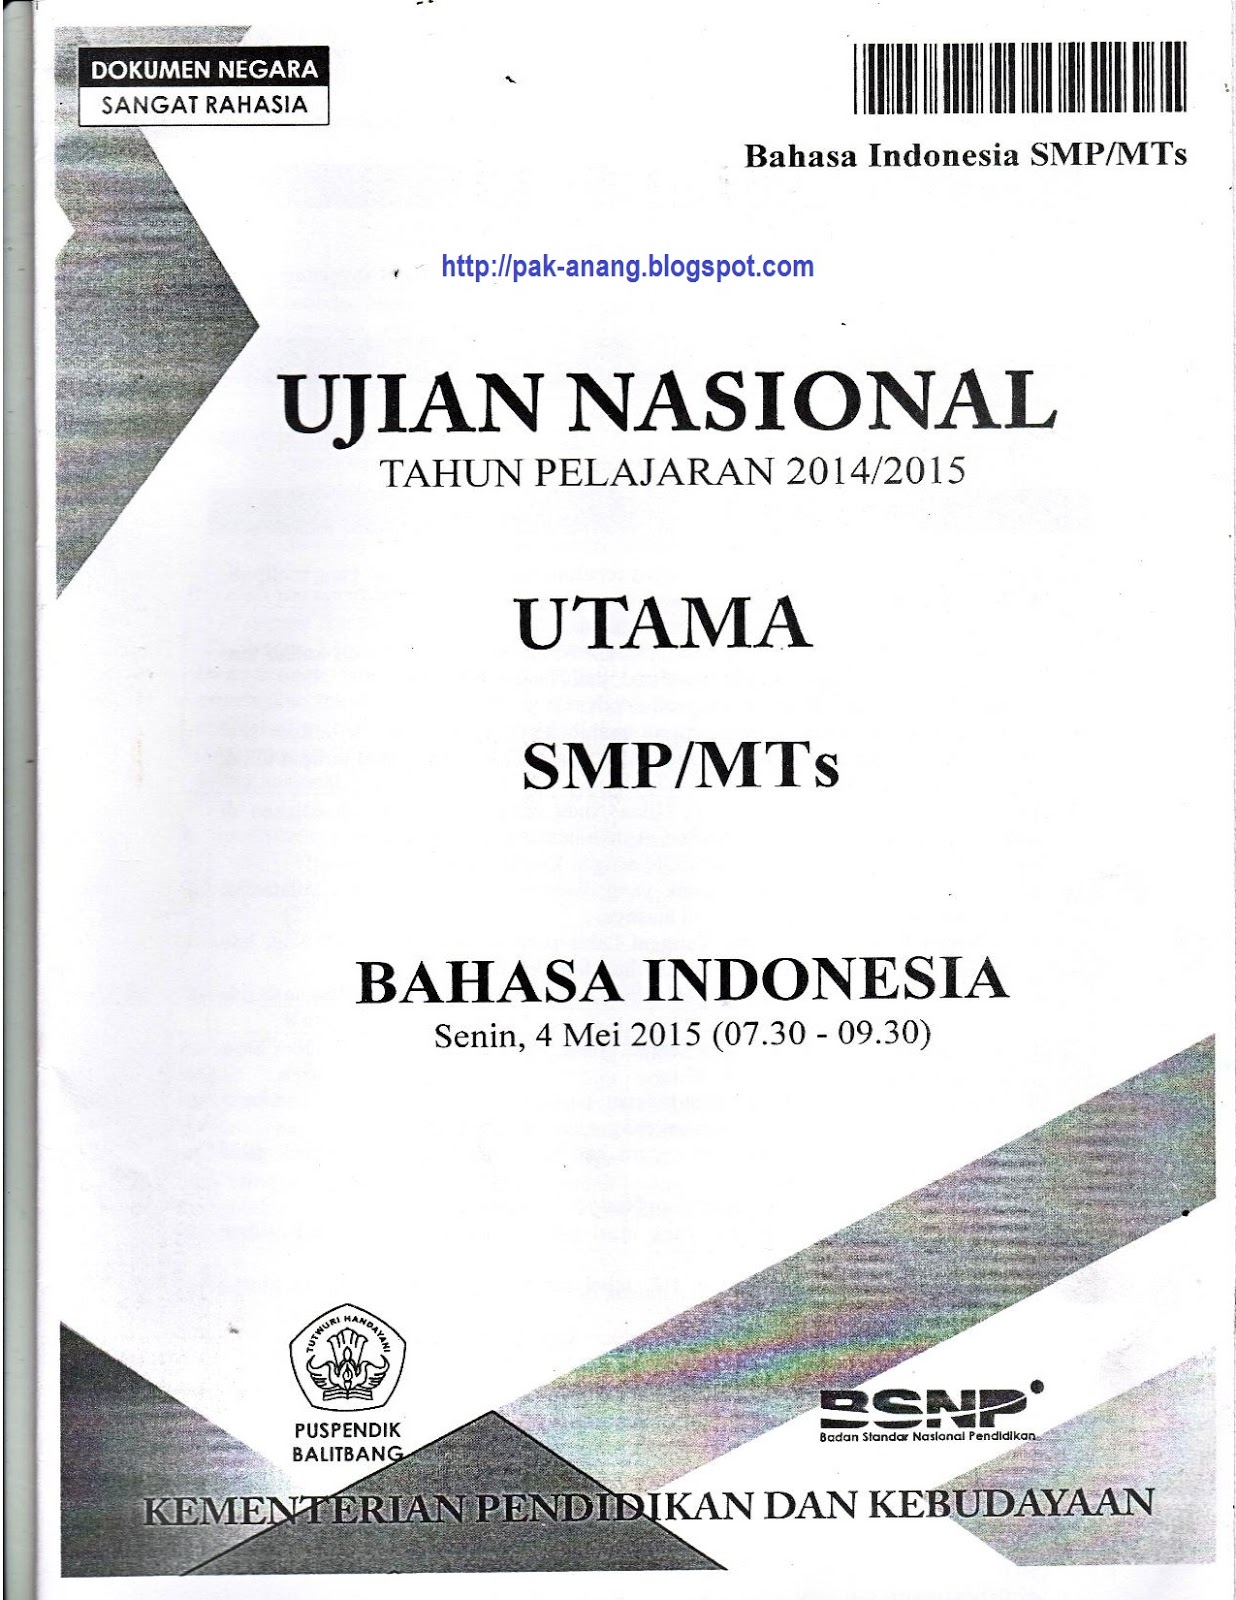 Banyak cara ditempuh untuk mendapatkan hasil bagus dalam UN Bahasa Indonesia SMP 2016 nanti Salah satunya adalah mencoba mengerjakan naskah soal asli UN